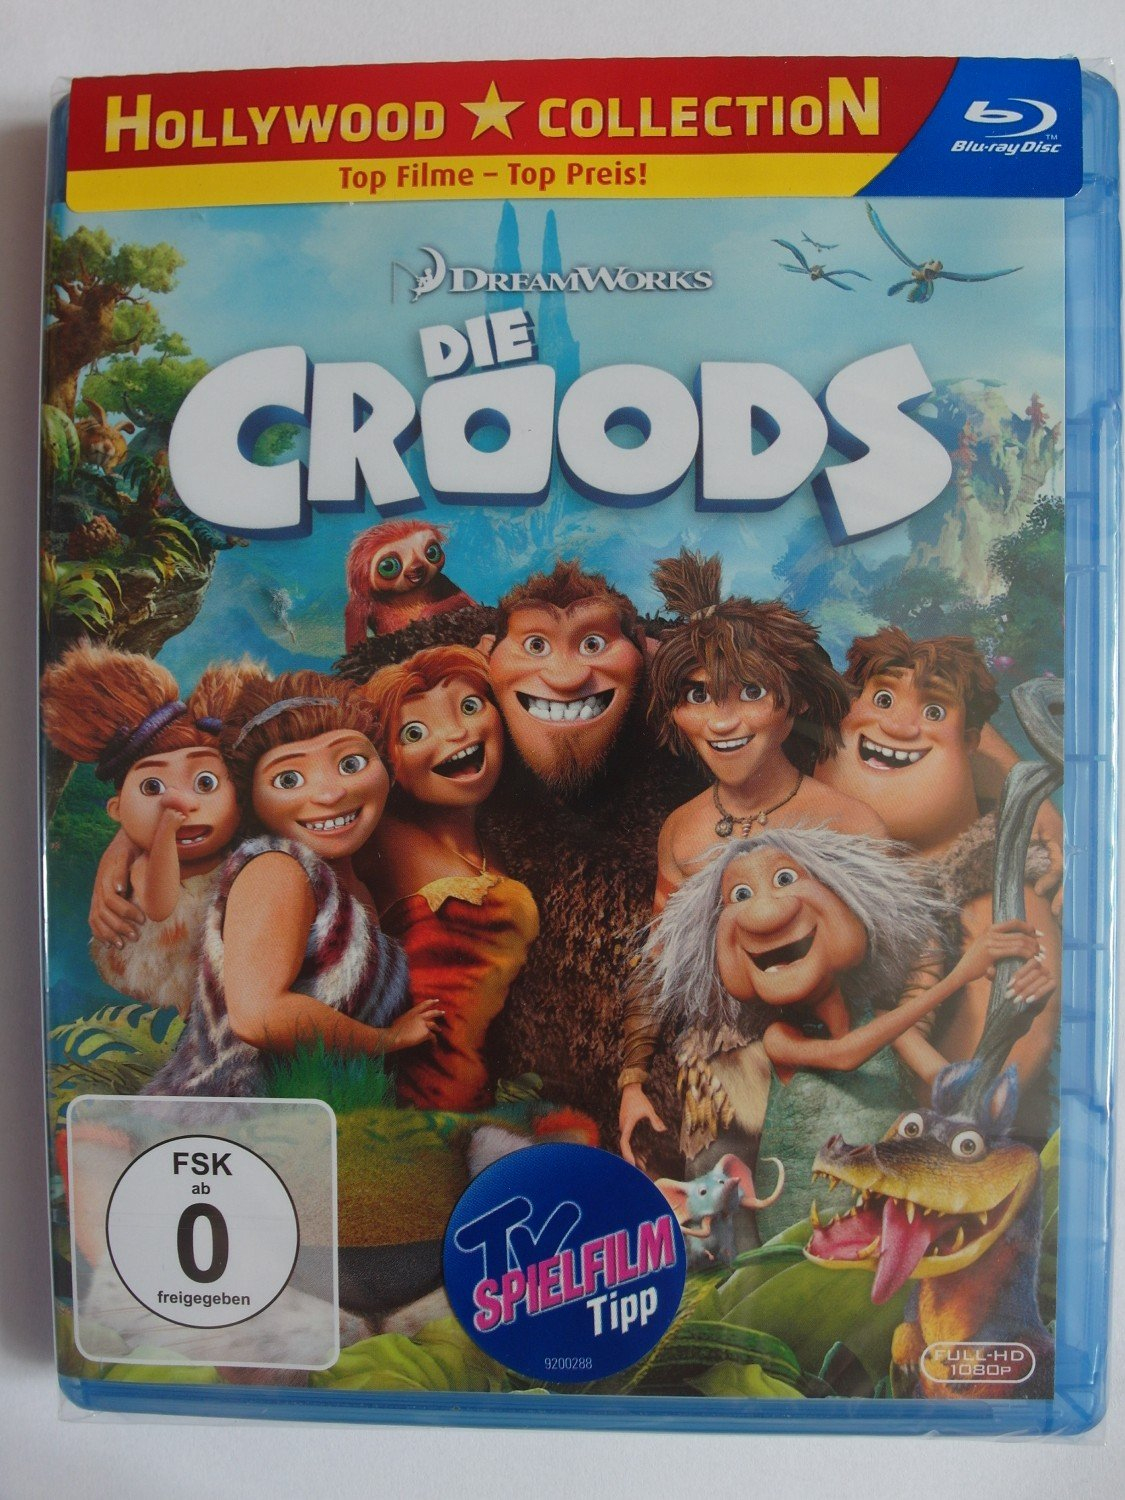 Die Croods - Dreamworks Animation - Prähistorische Familie, Fantasie  Kreaturen avec Film D Animation Dreamworks